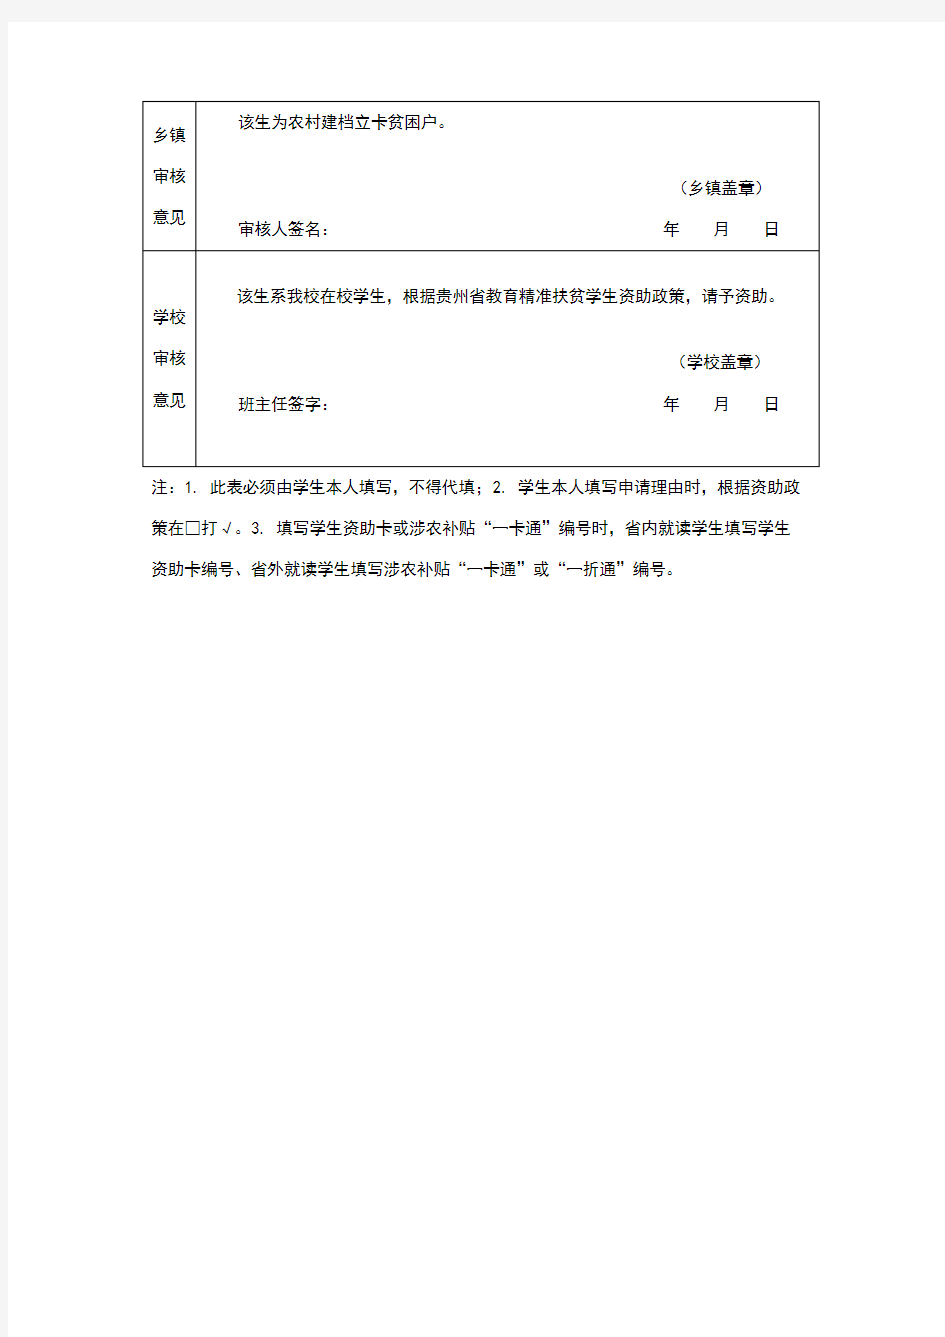 贵州省教育精准扶贫资助申请表(标准版)